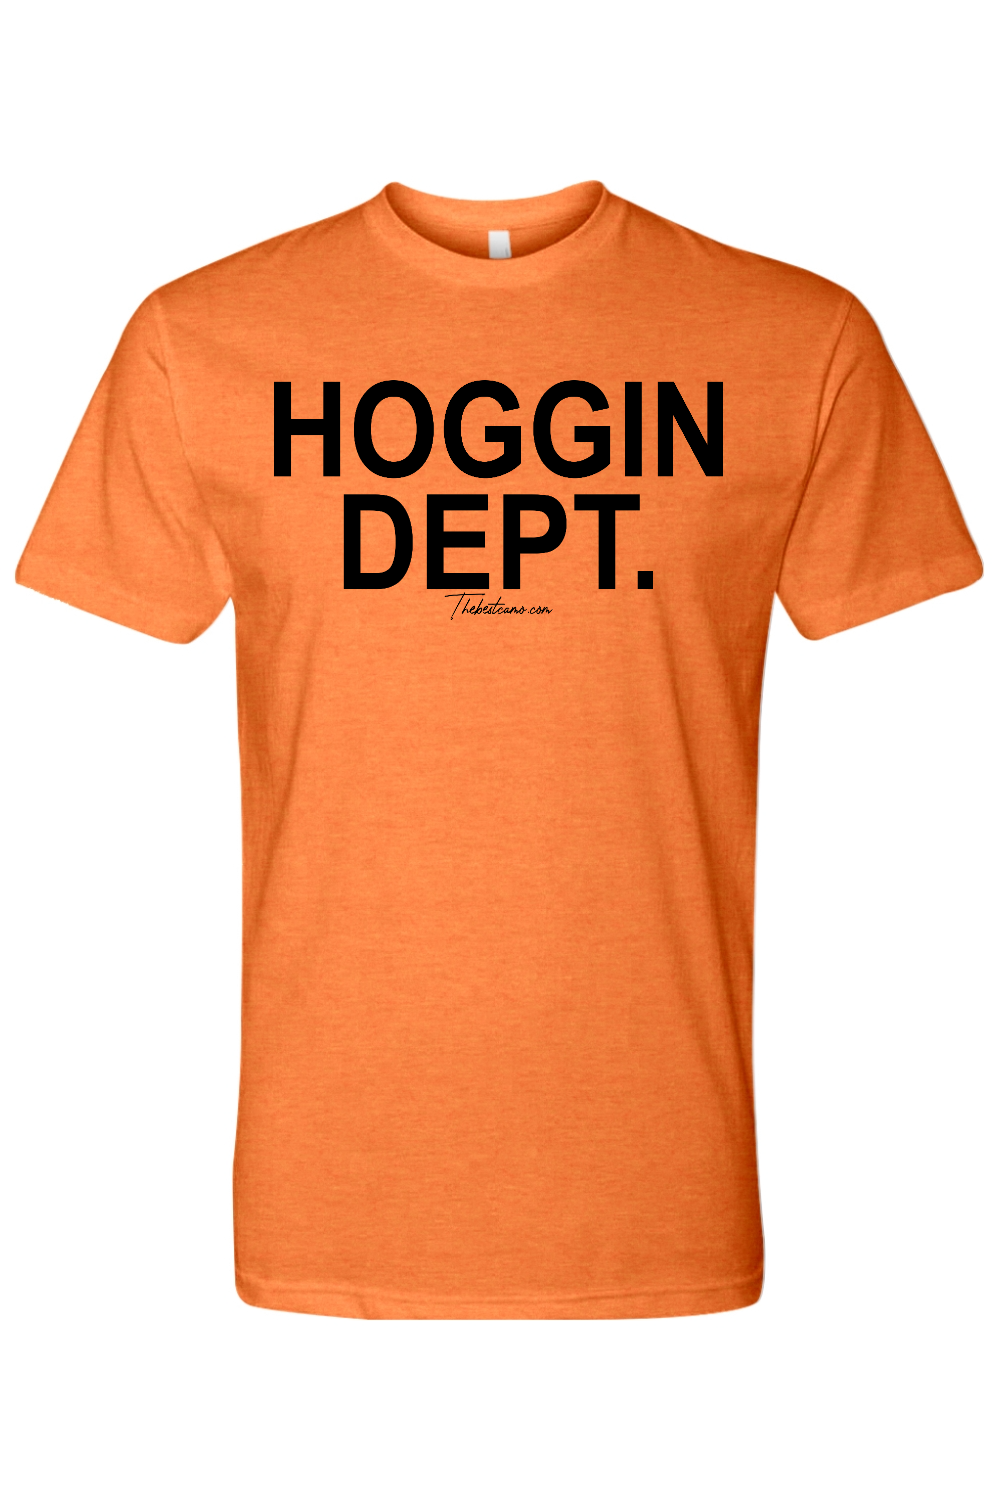 hoggin dept t-shirt